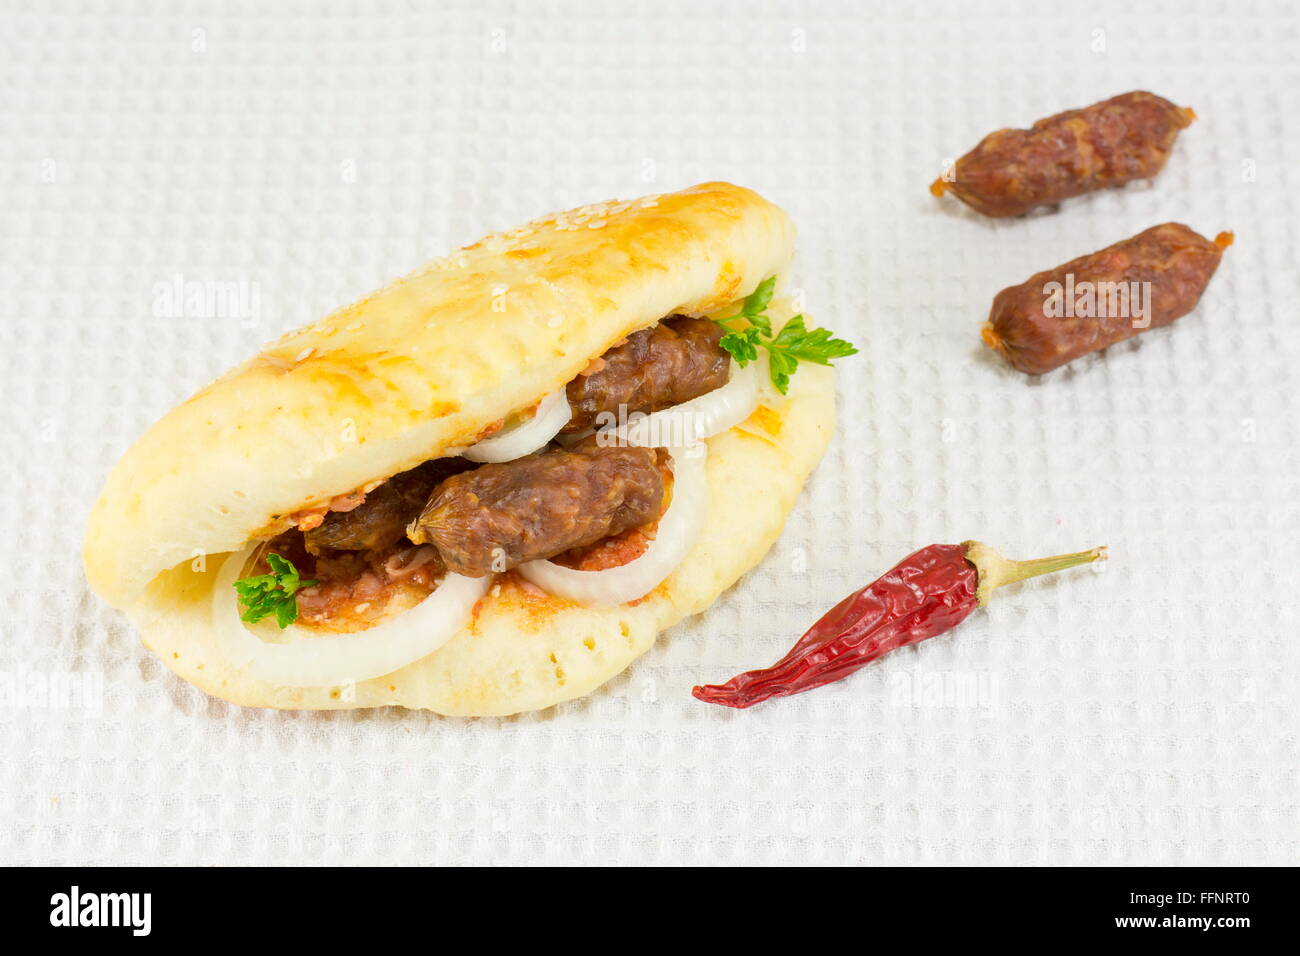 Sandwich gastronomique épicée avec des petites saucisses sur nappe blanche Banque D'Images